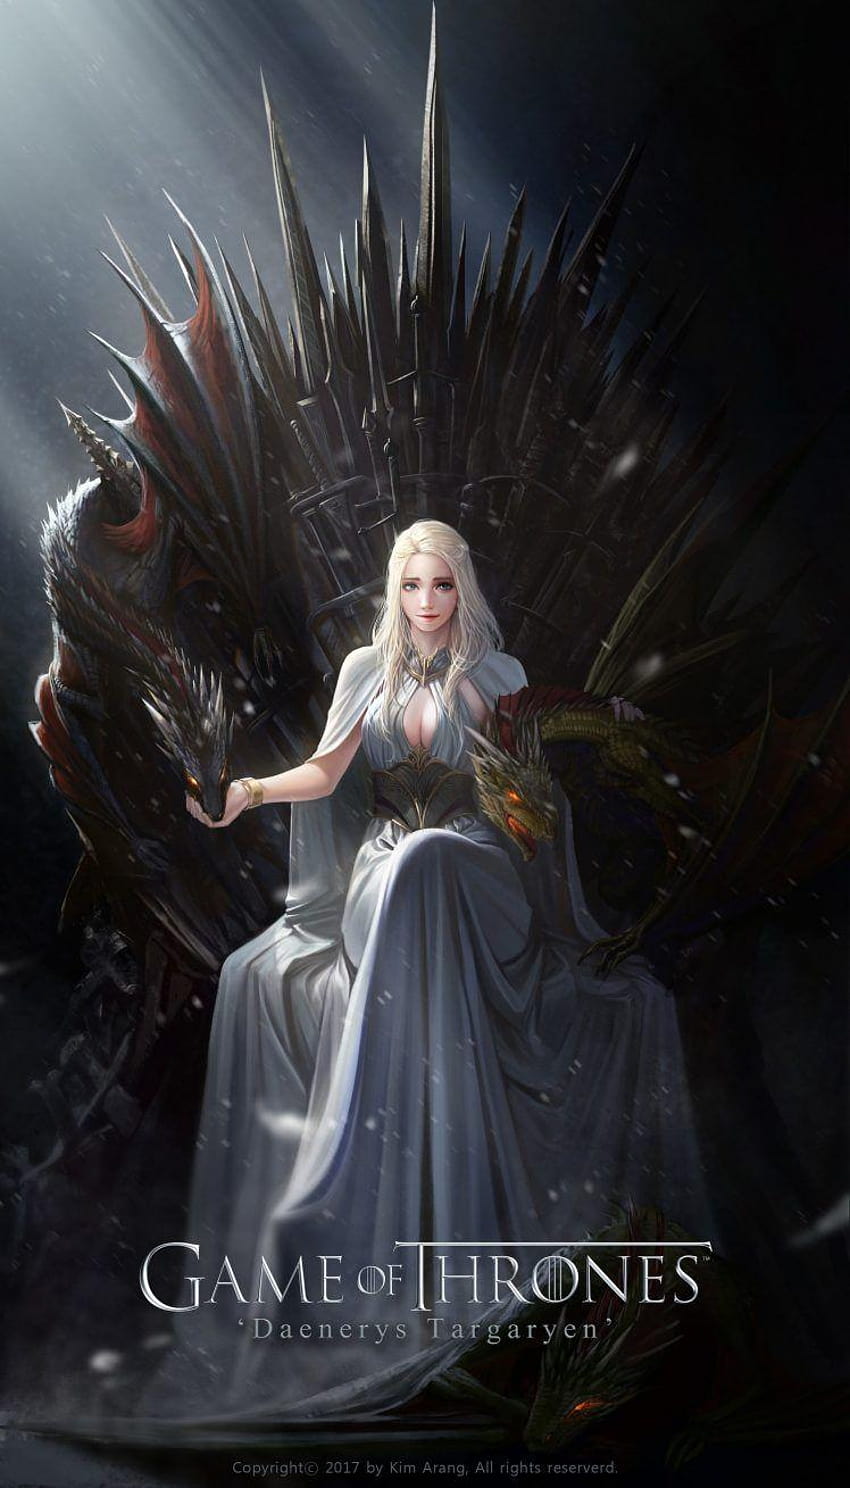 Papeis de parede Game of Thrones Dragões Fogo Desenhado Daenerys Targaryen  Emilia Clarke Filme Meninas baixar imagens